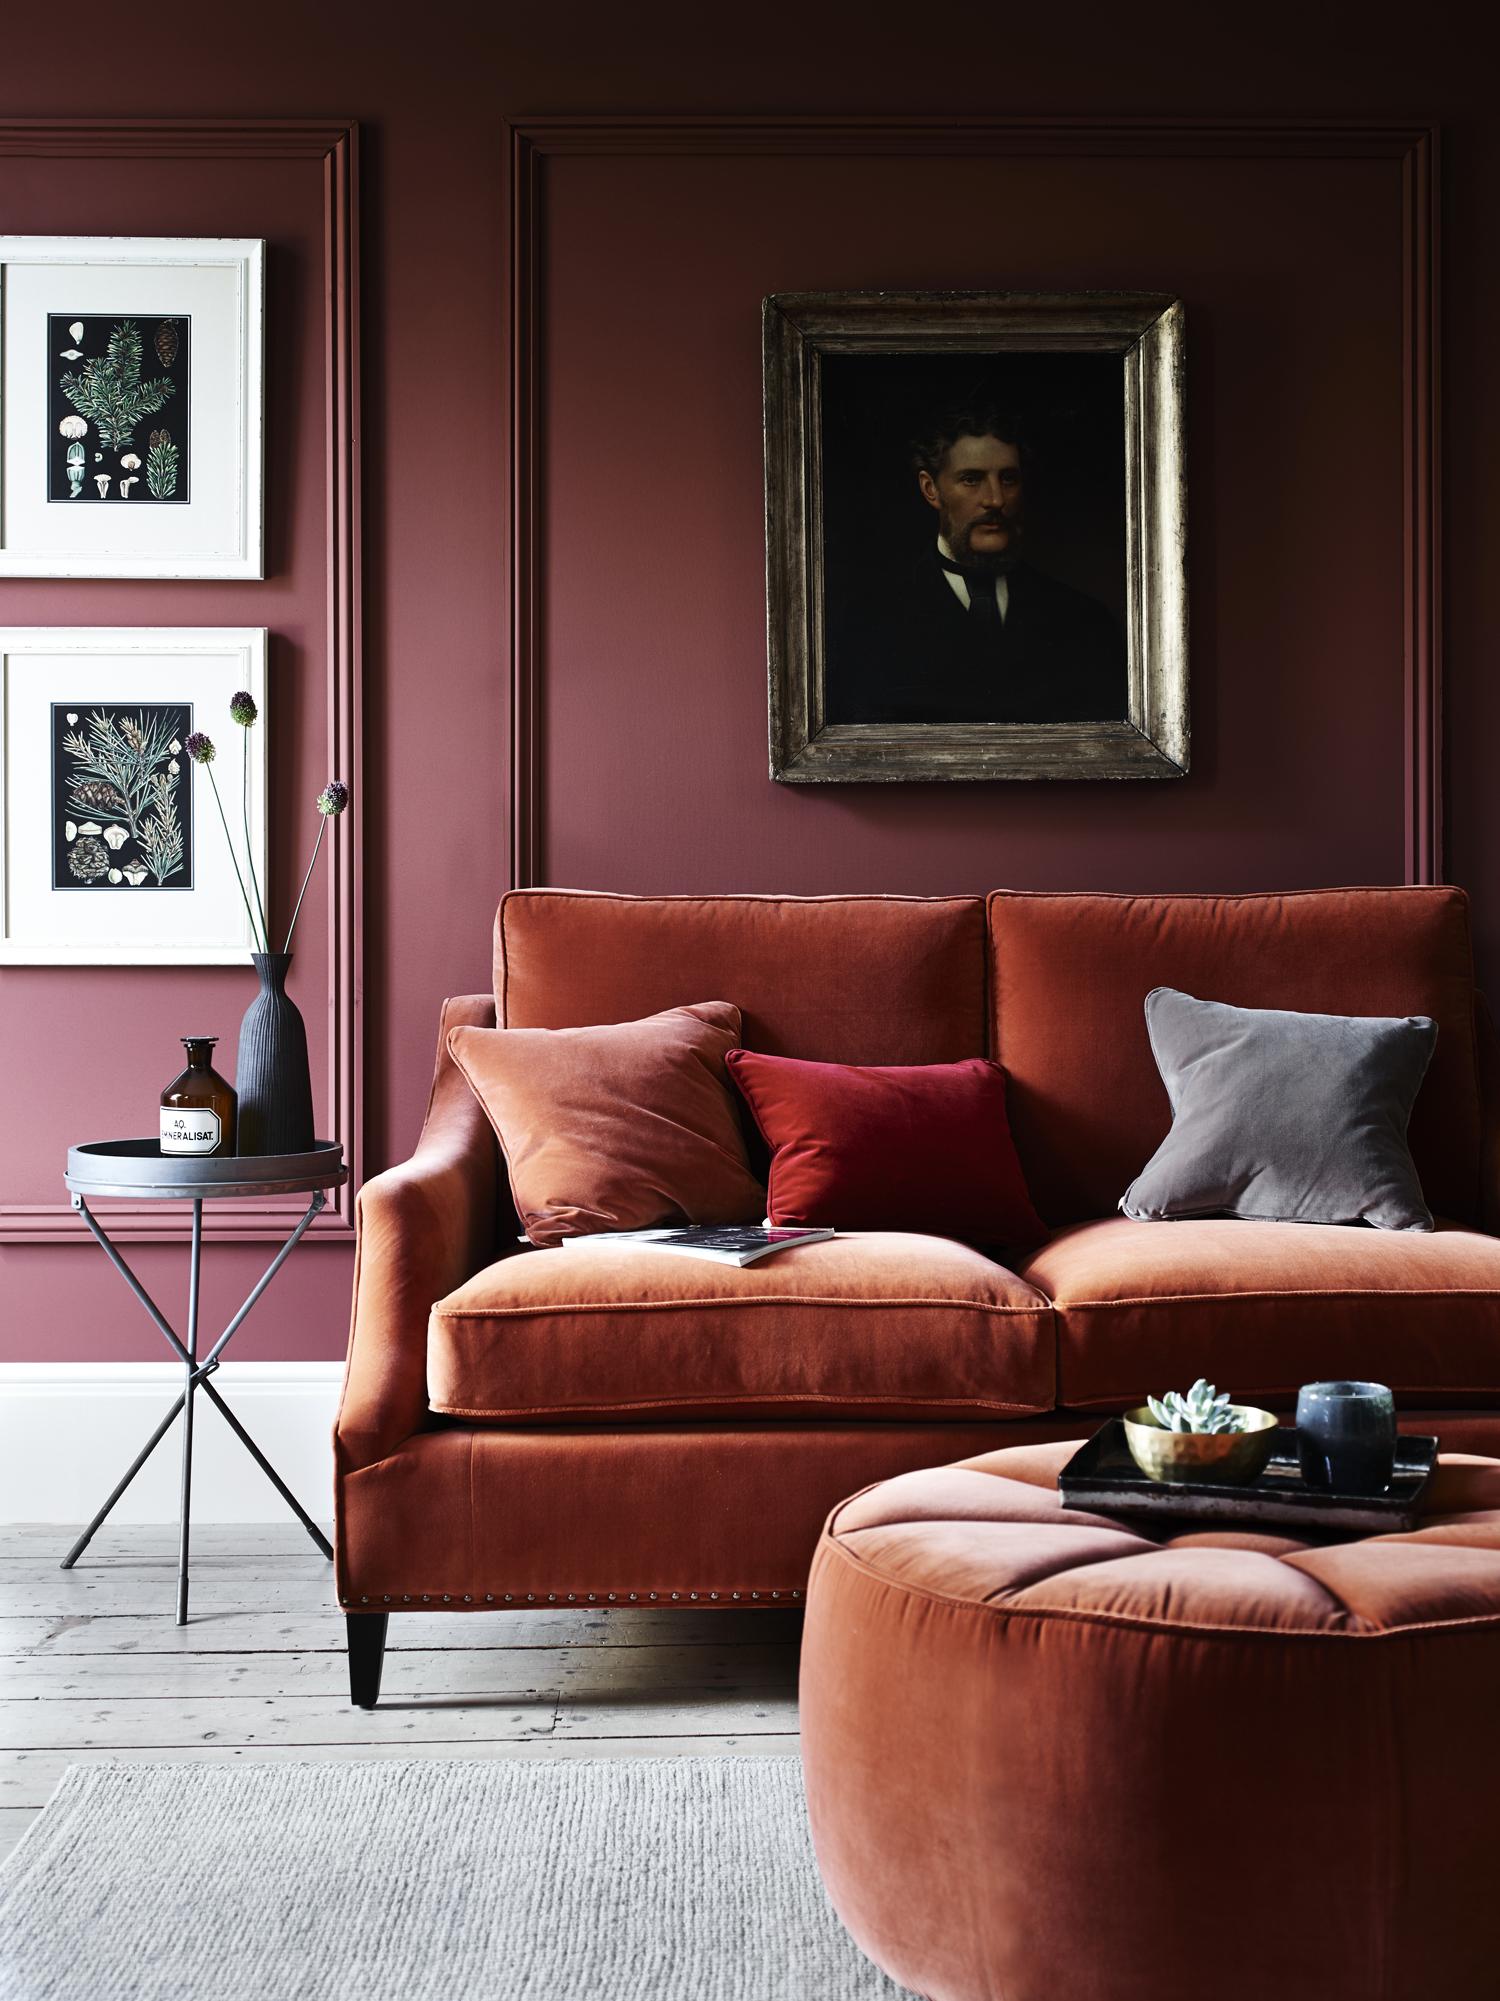 Klassischer Look in Samt & Rosé #beistelltisch #wohnzimmer #rotessofa #zimmergestaltung ©Neptune